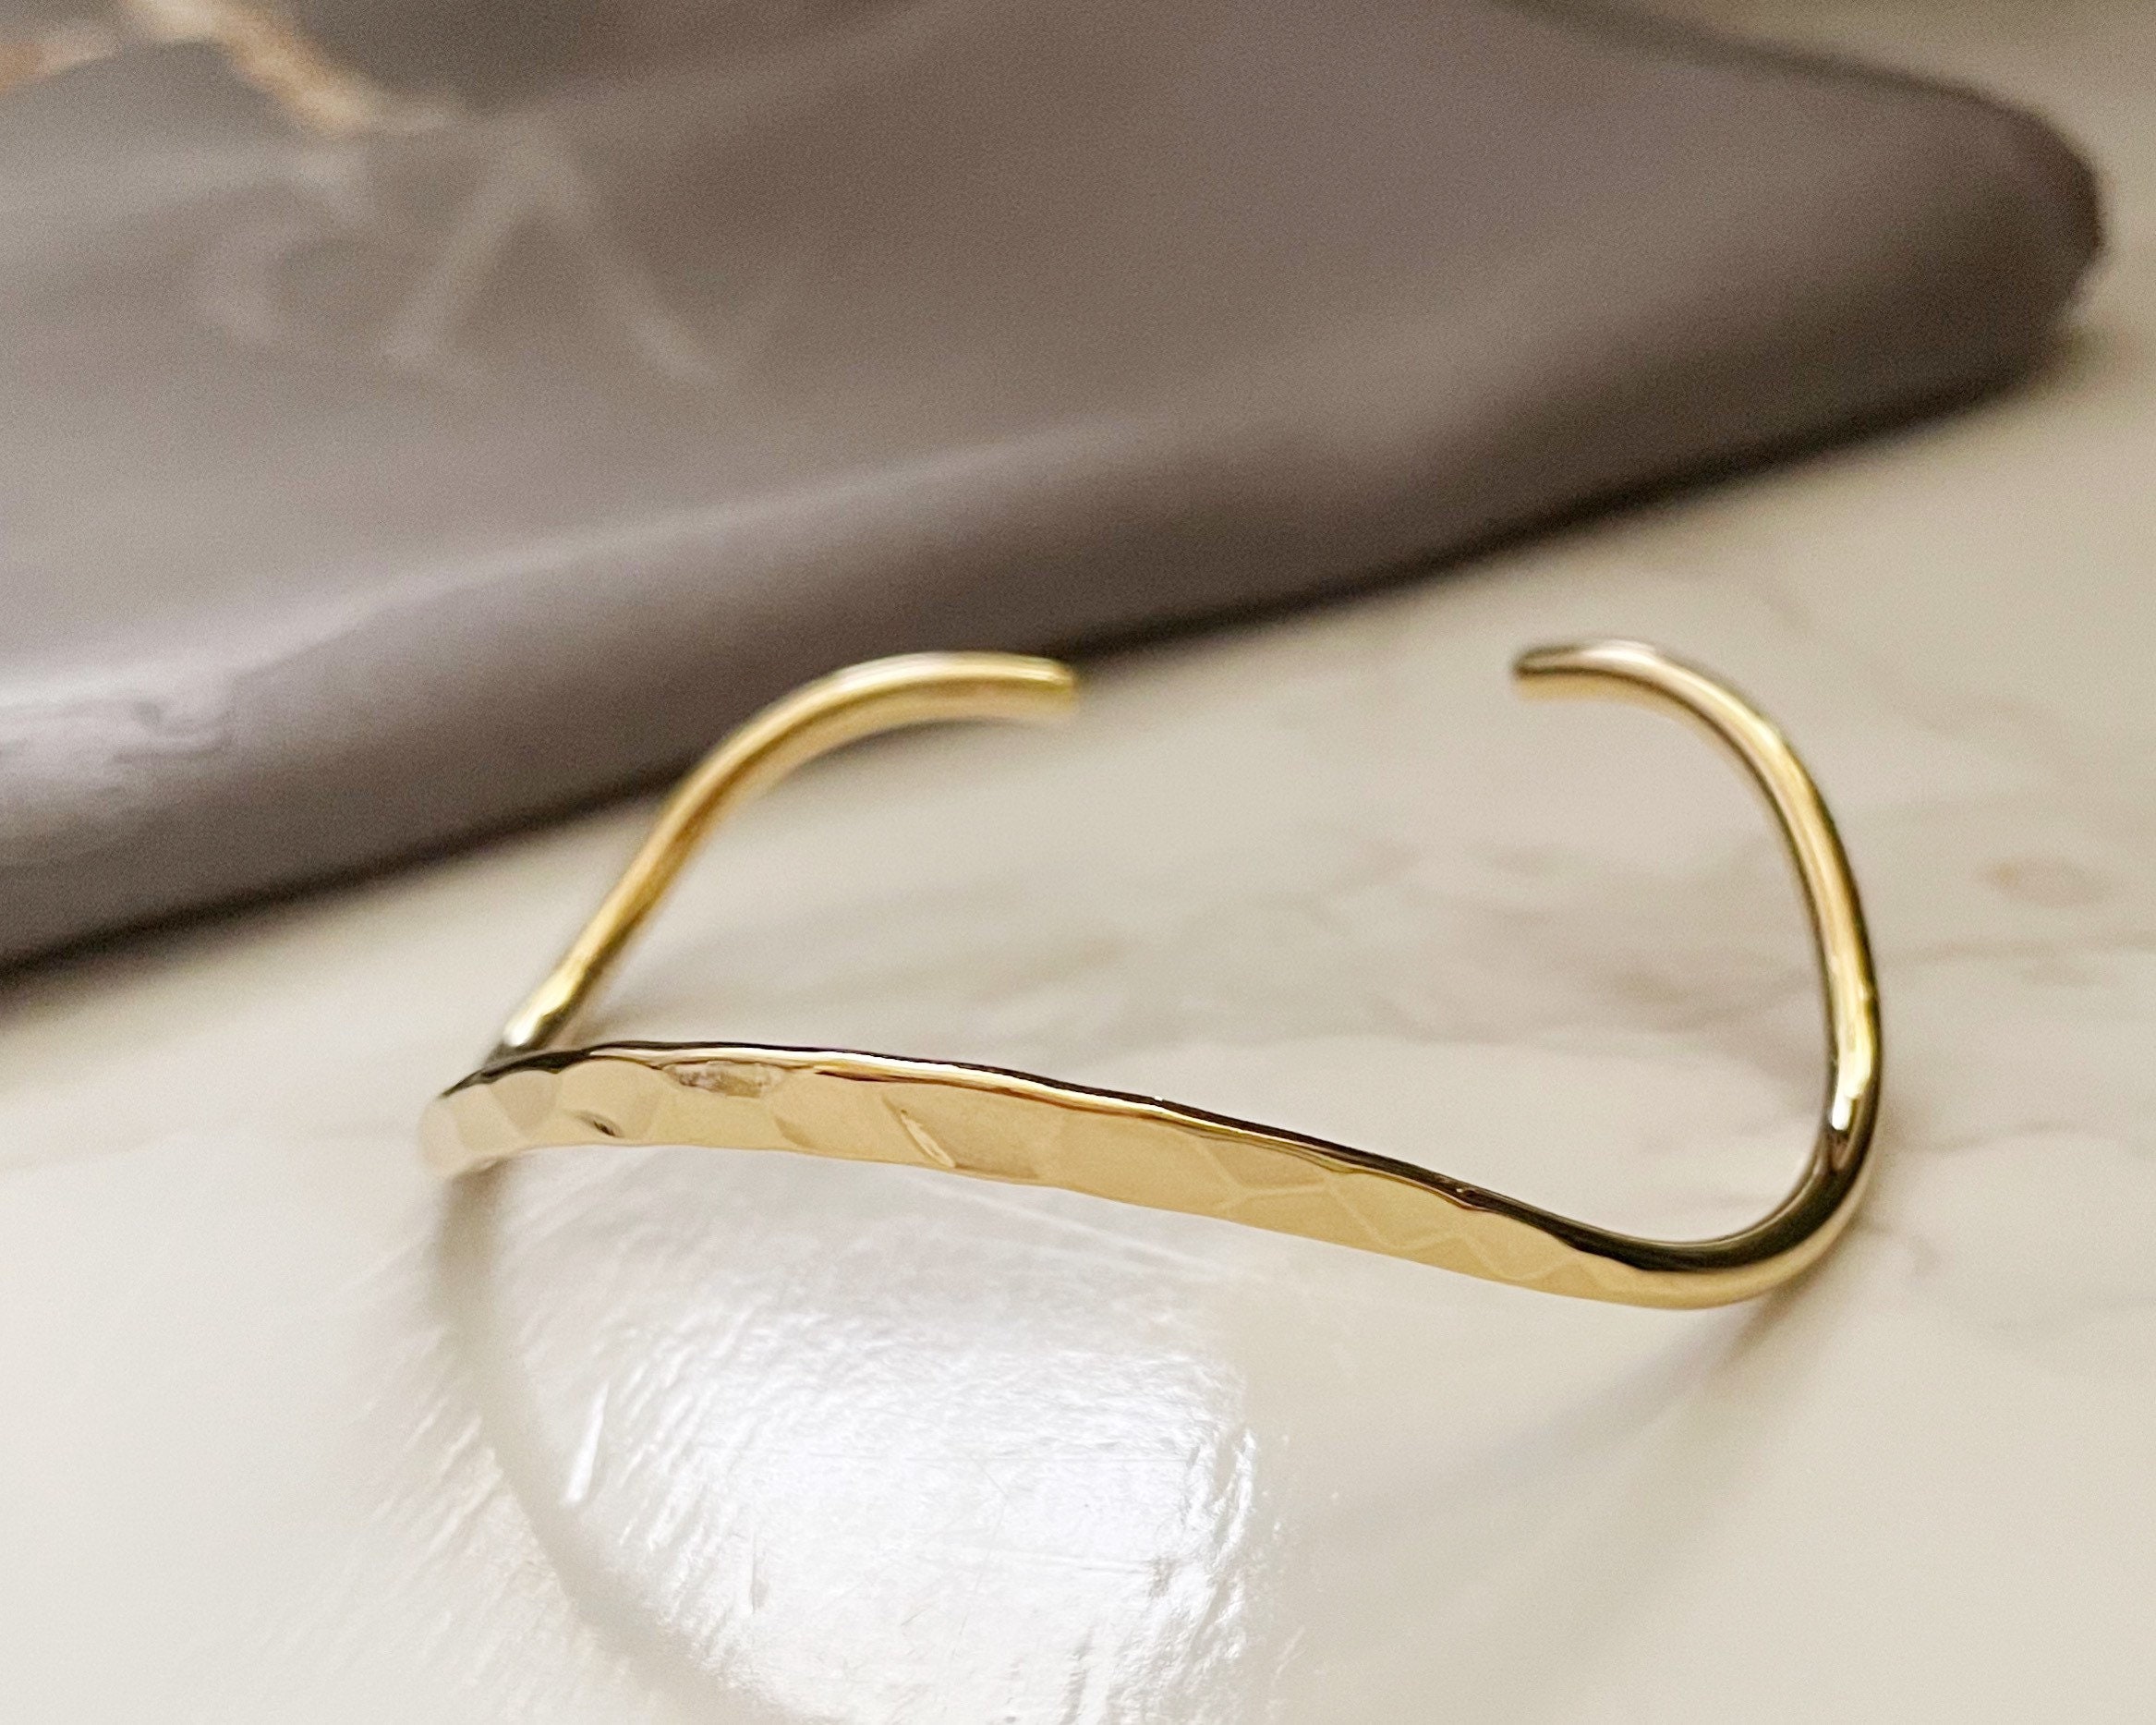 Hammered Cuff Bracelet Gold Filled / 6